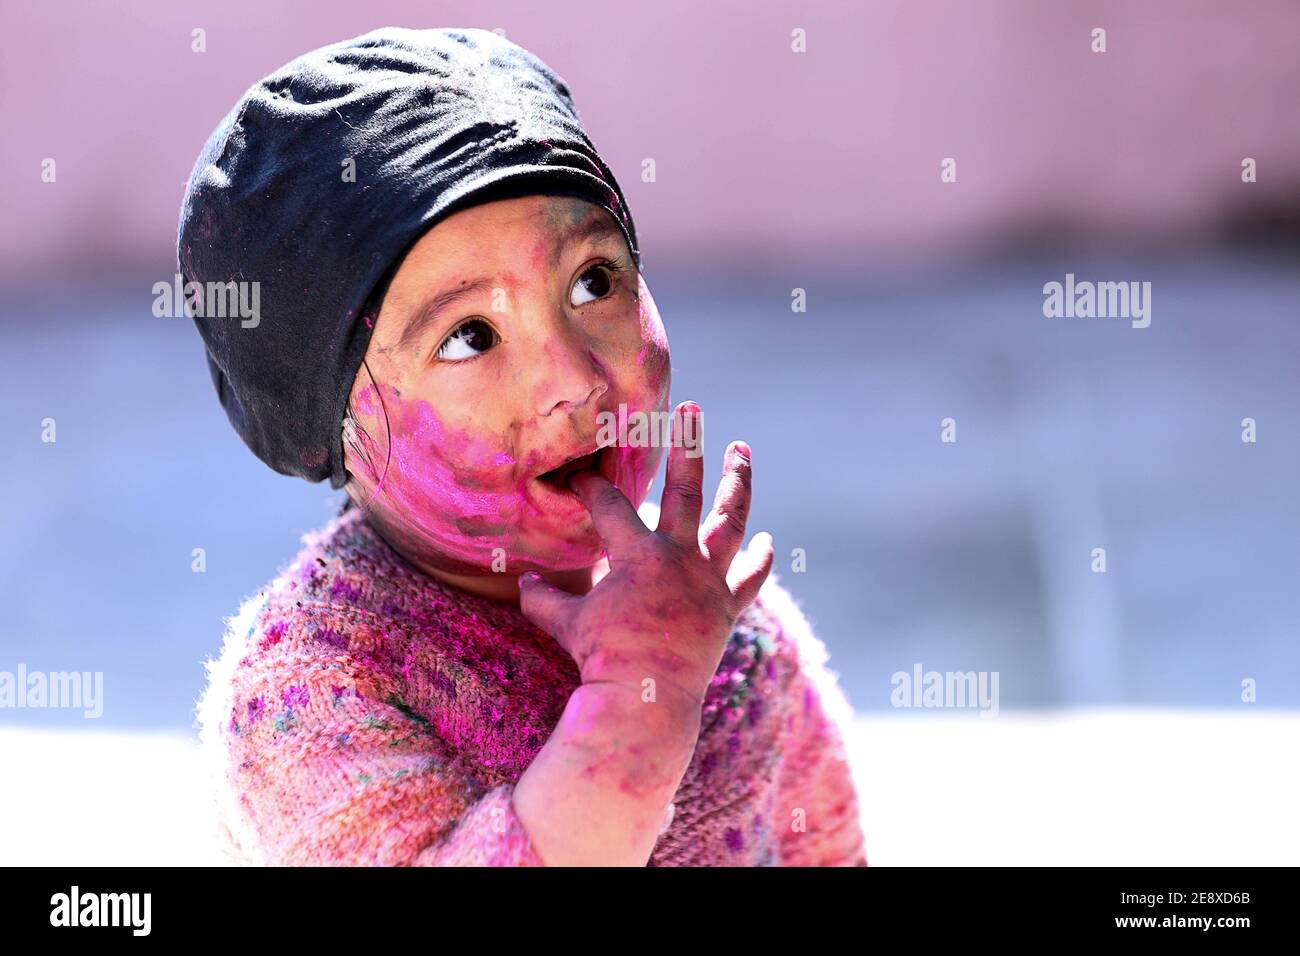 Ritratto del viso Kid pieno di colori durante il gioco colore durante la festa dei colori holi Foto Stock